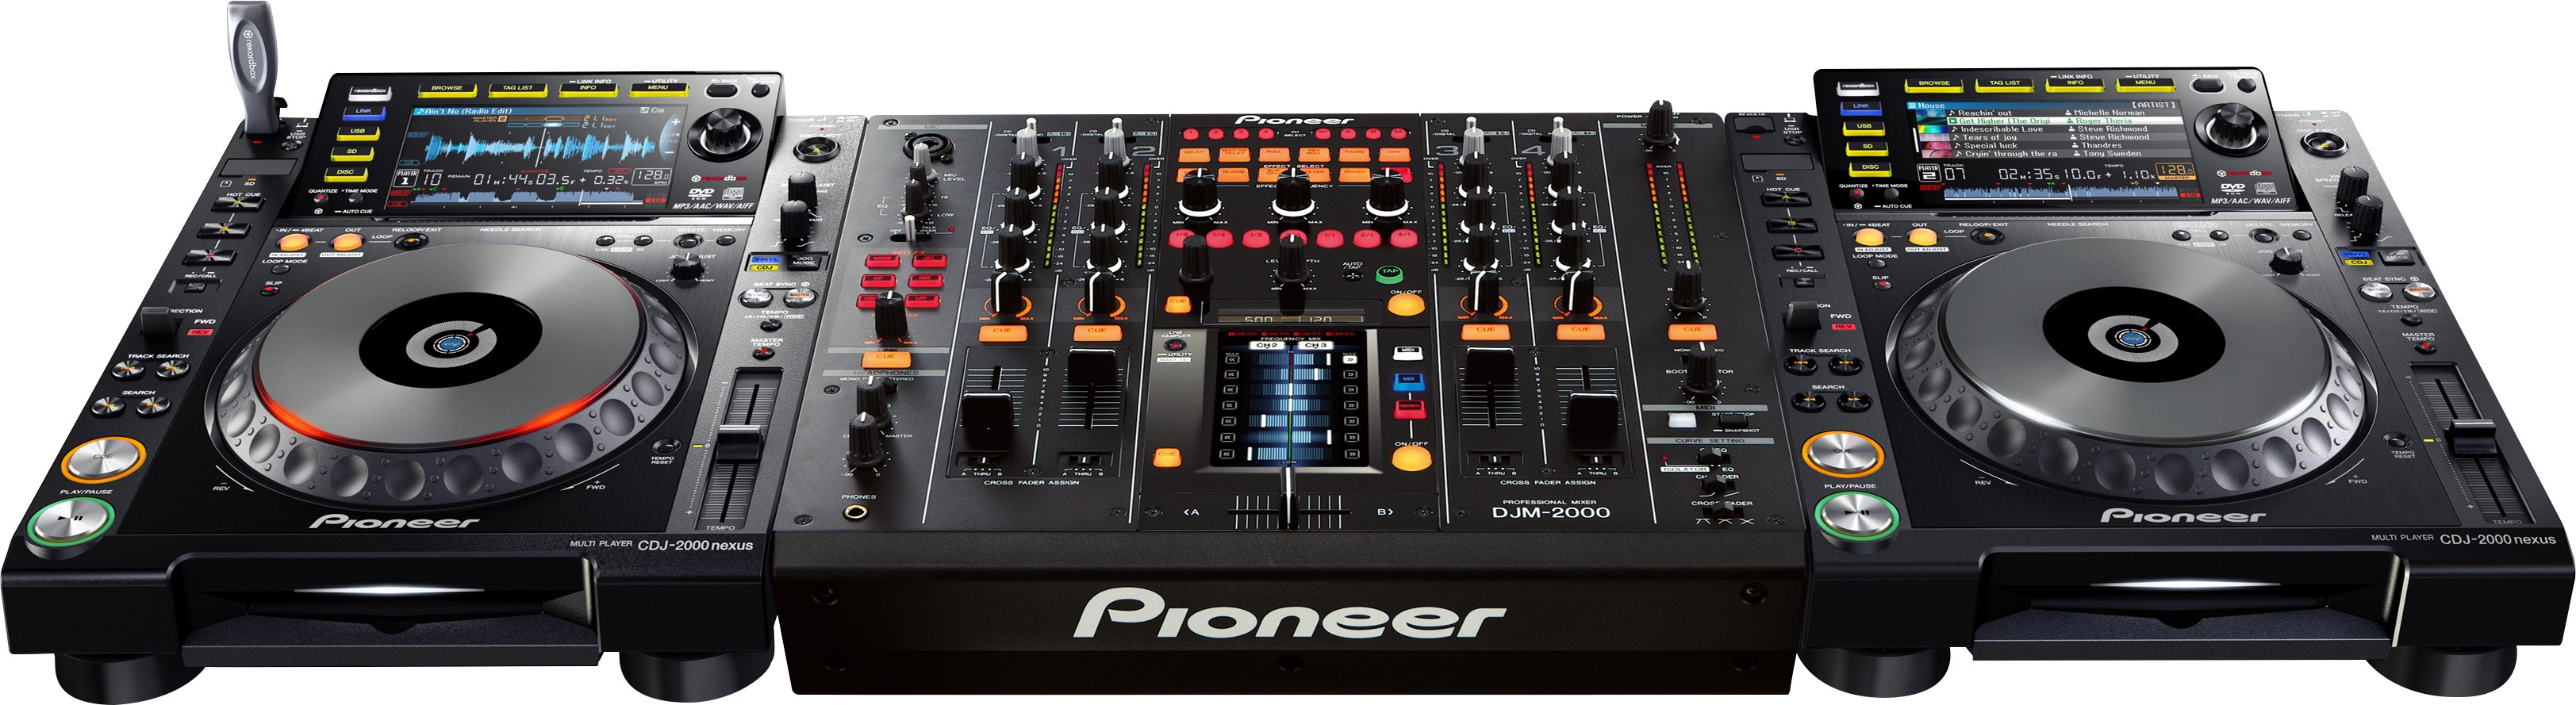 Pioneer Dj Djm2000nexus - Table De Mixage Dj - Variation 3